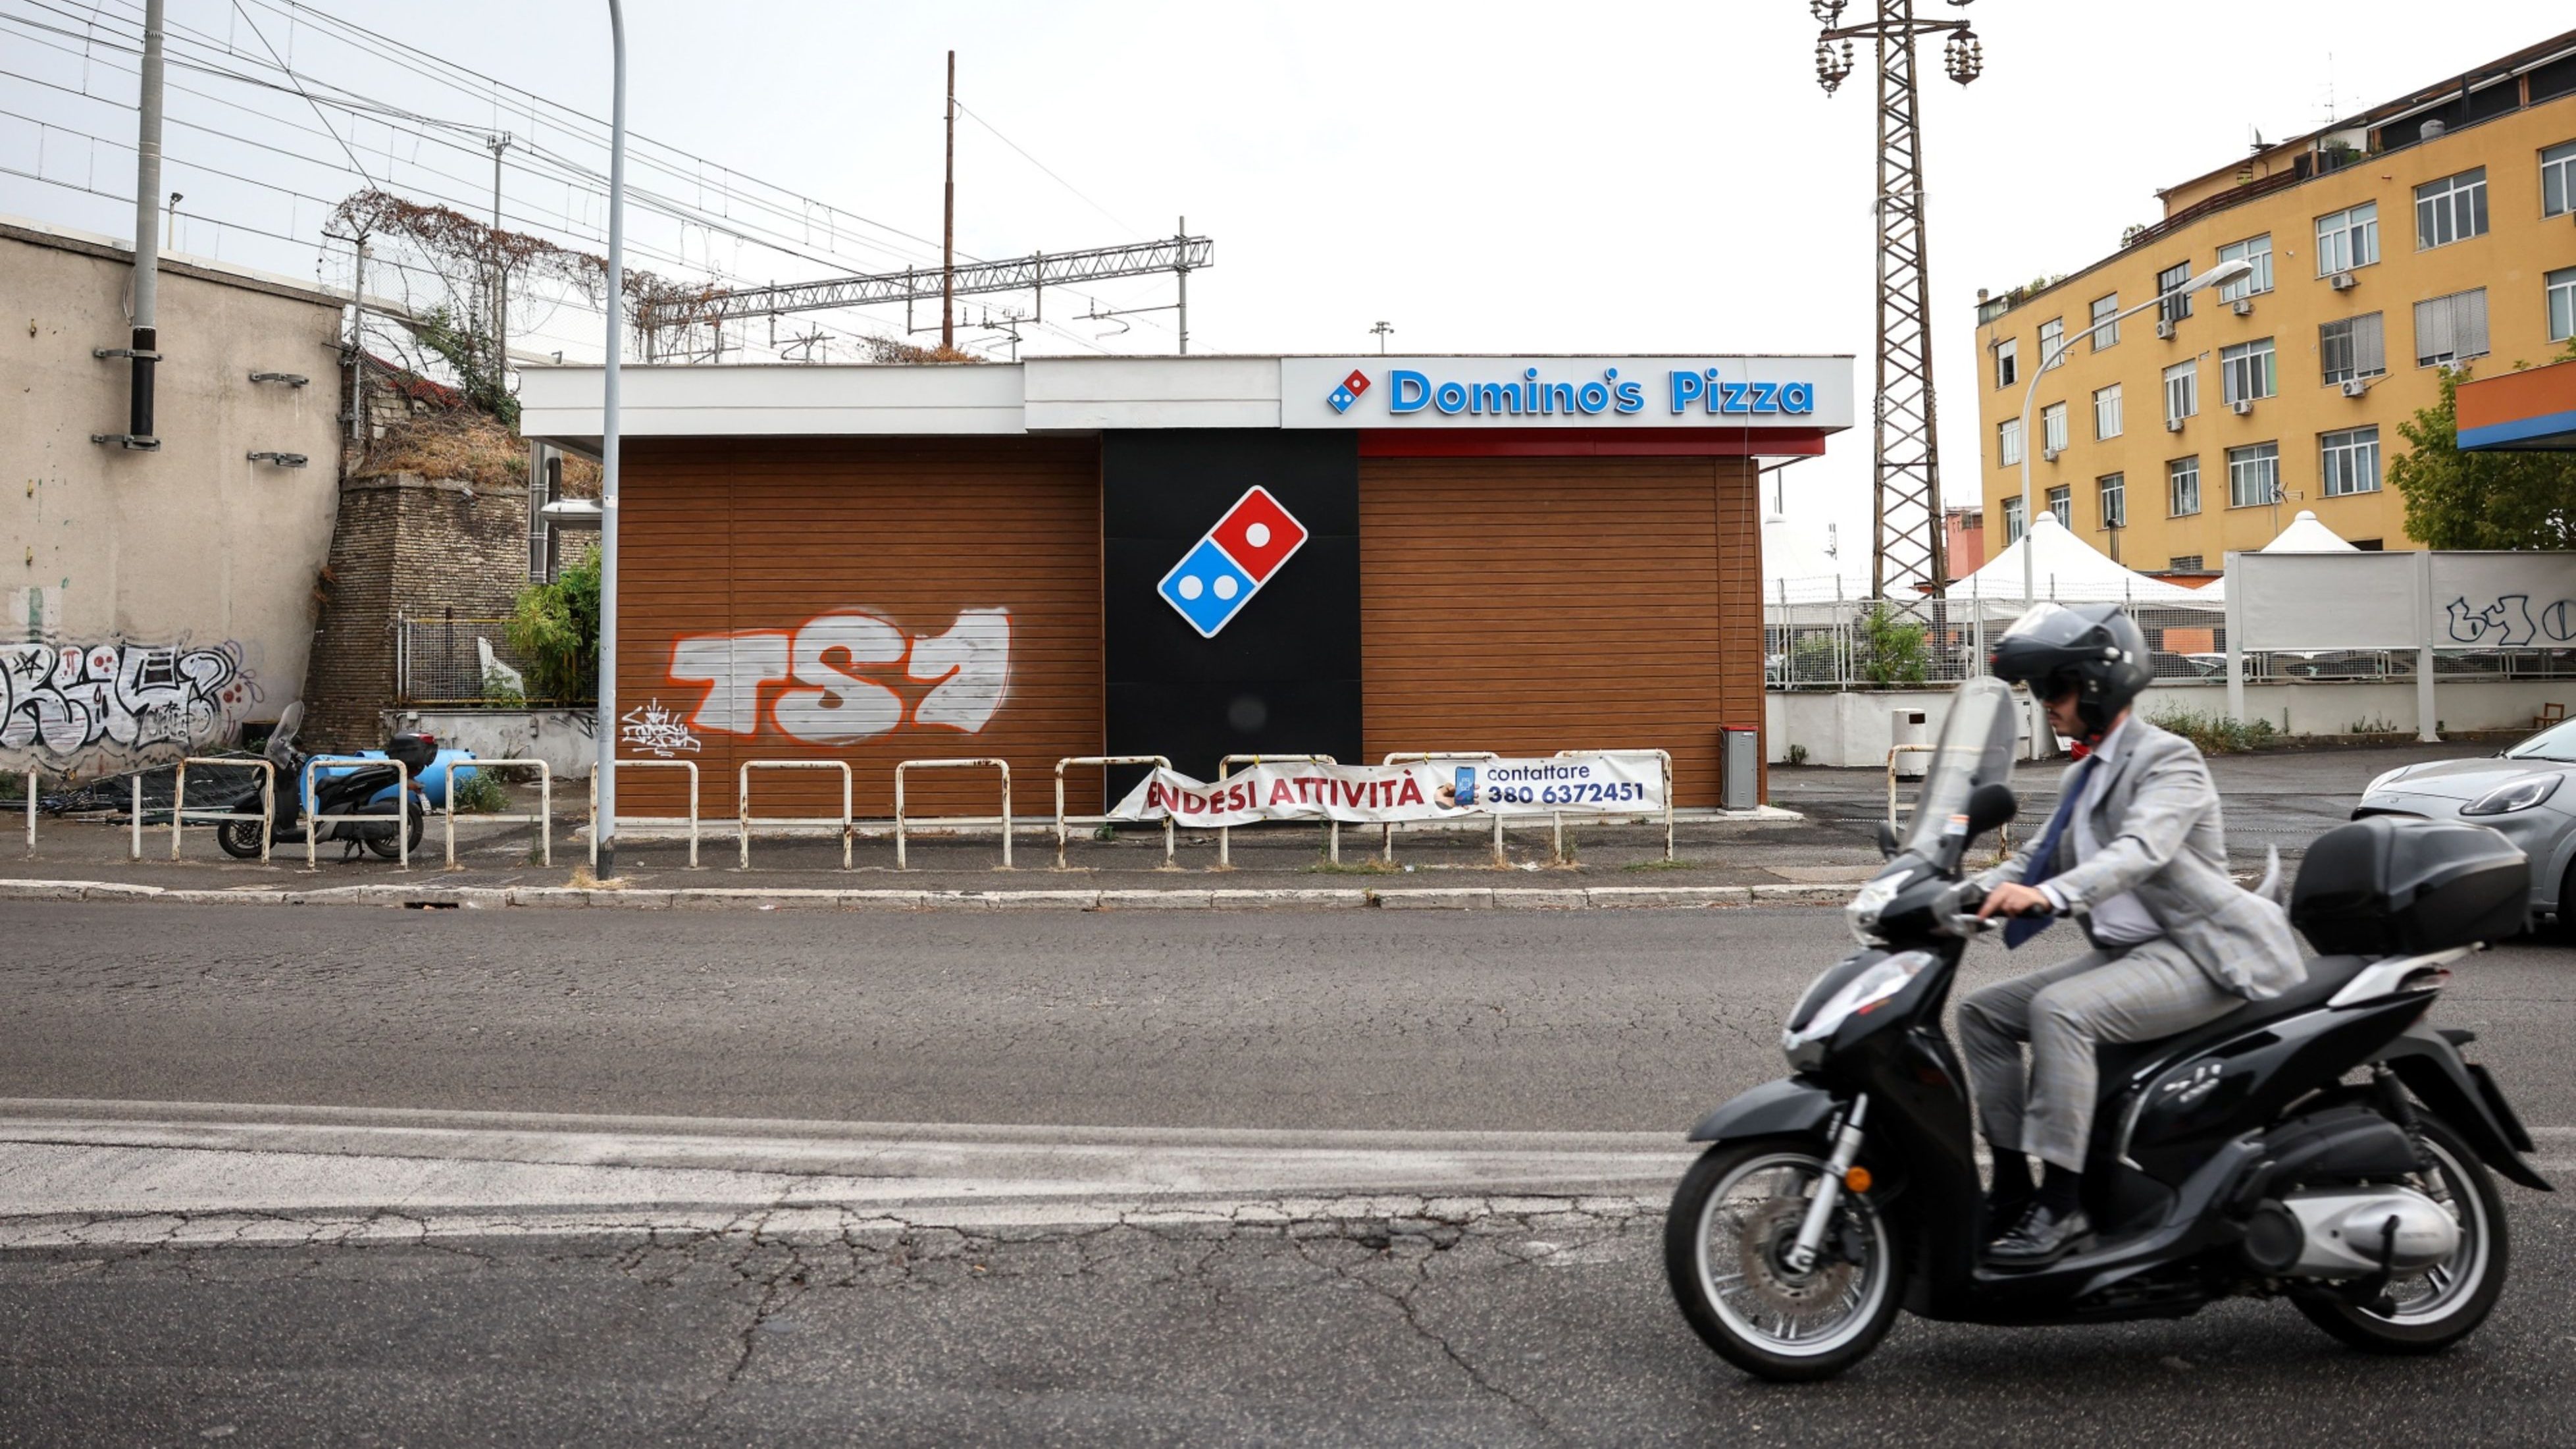 ｢ドミノ・ピザ」チェーンが本場イタリアで全店閉鎖に追い込まれた理由 | イタリア人はパイナップルピザが苦手？